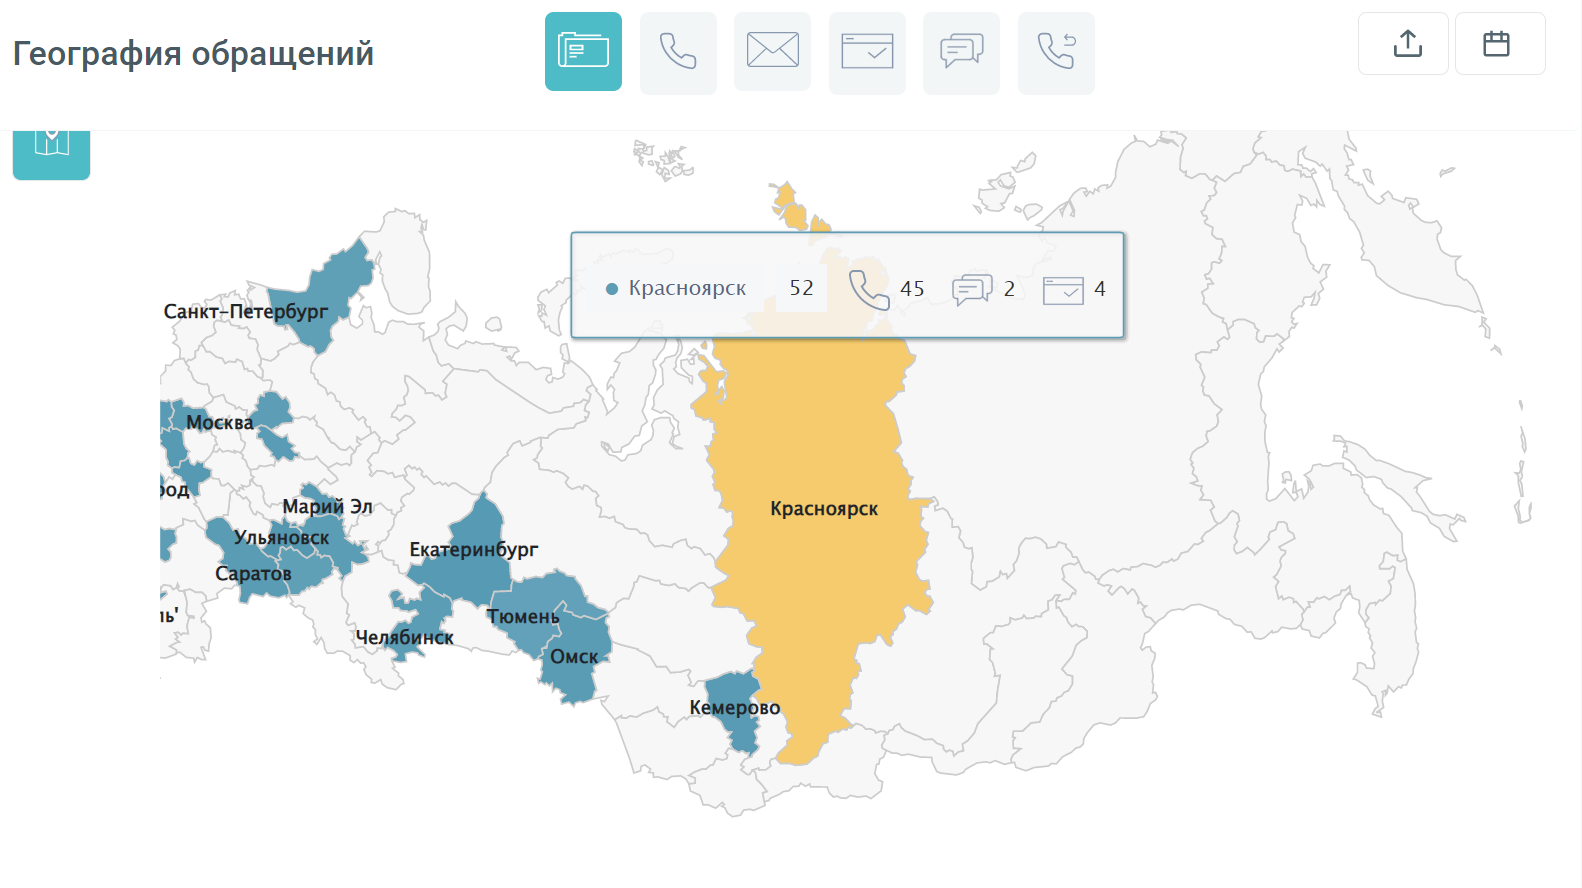 Удобная графика географии обращений от Calltracking.ru